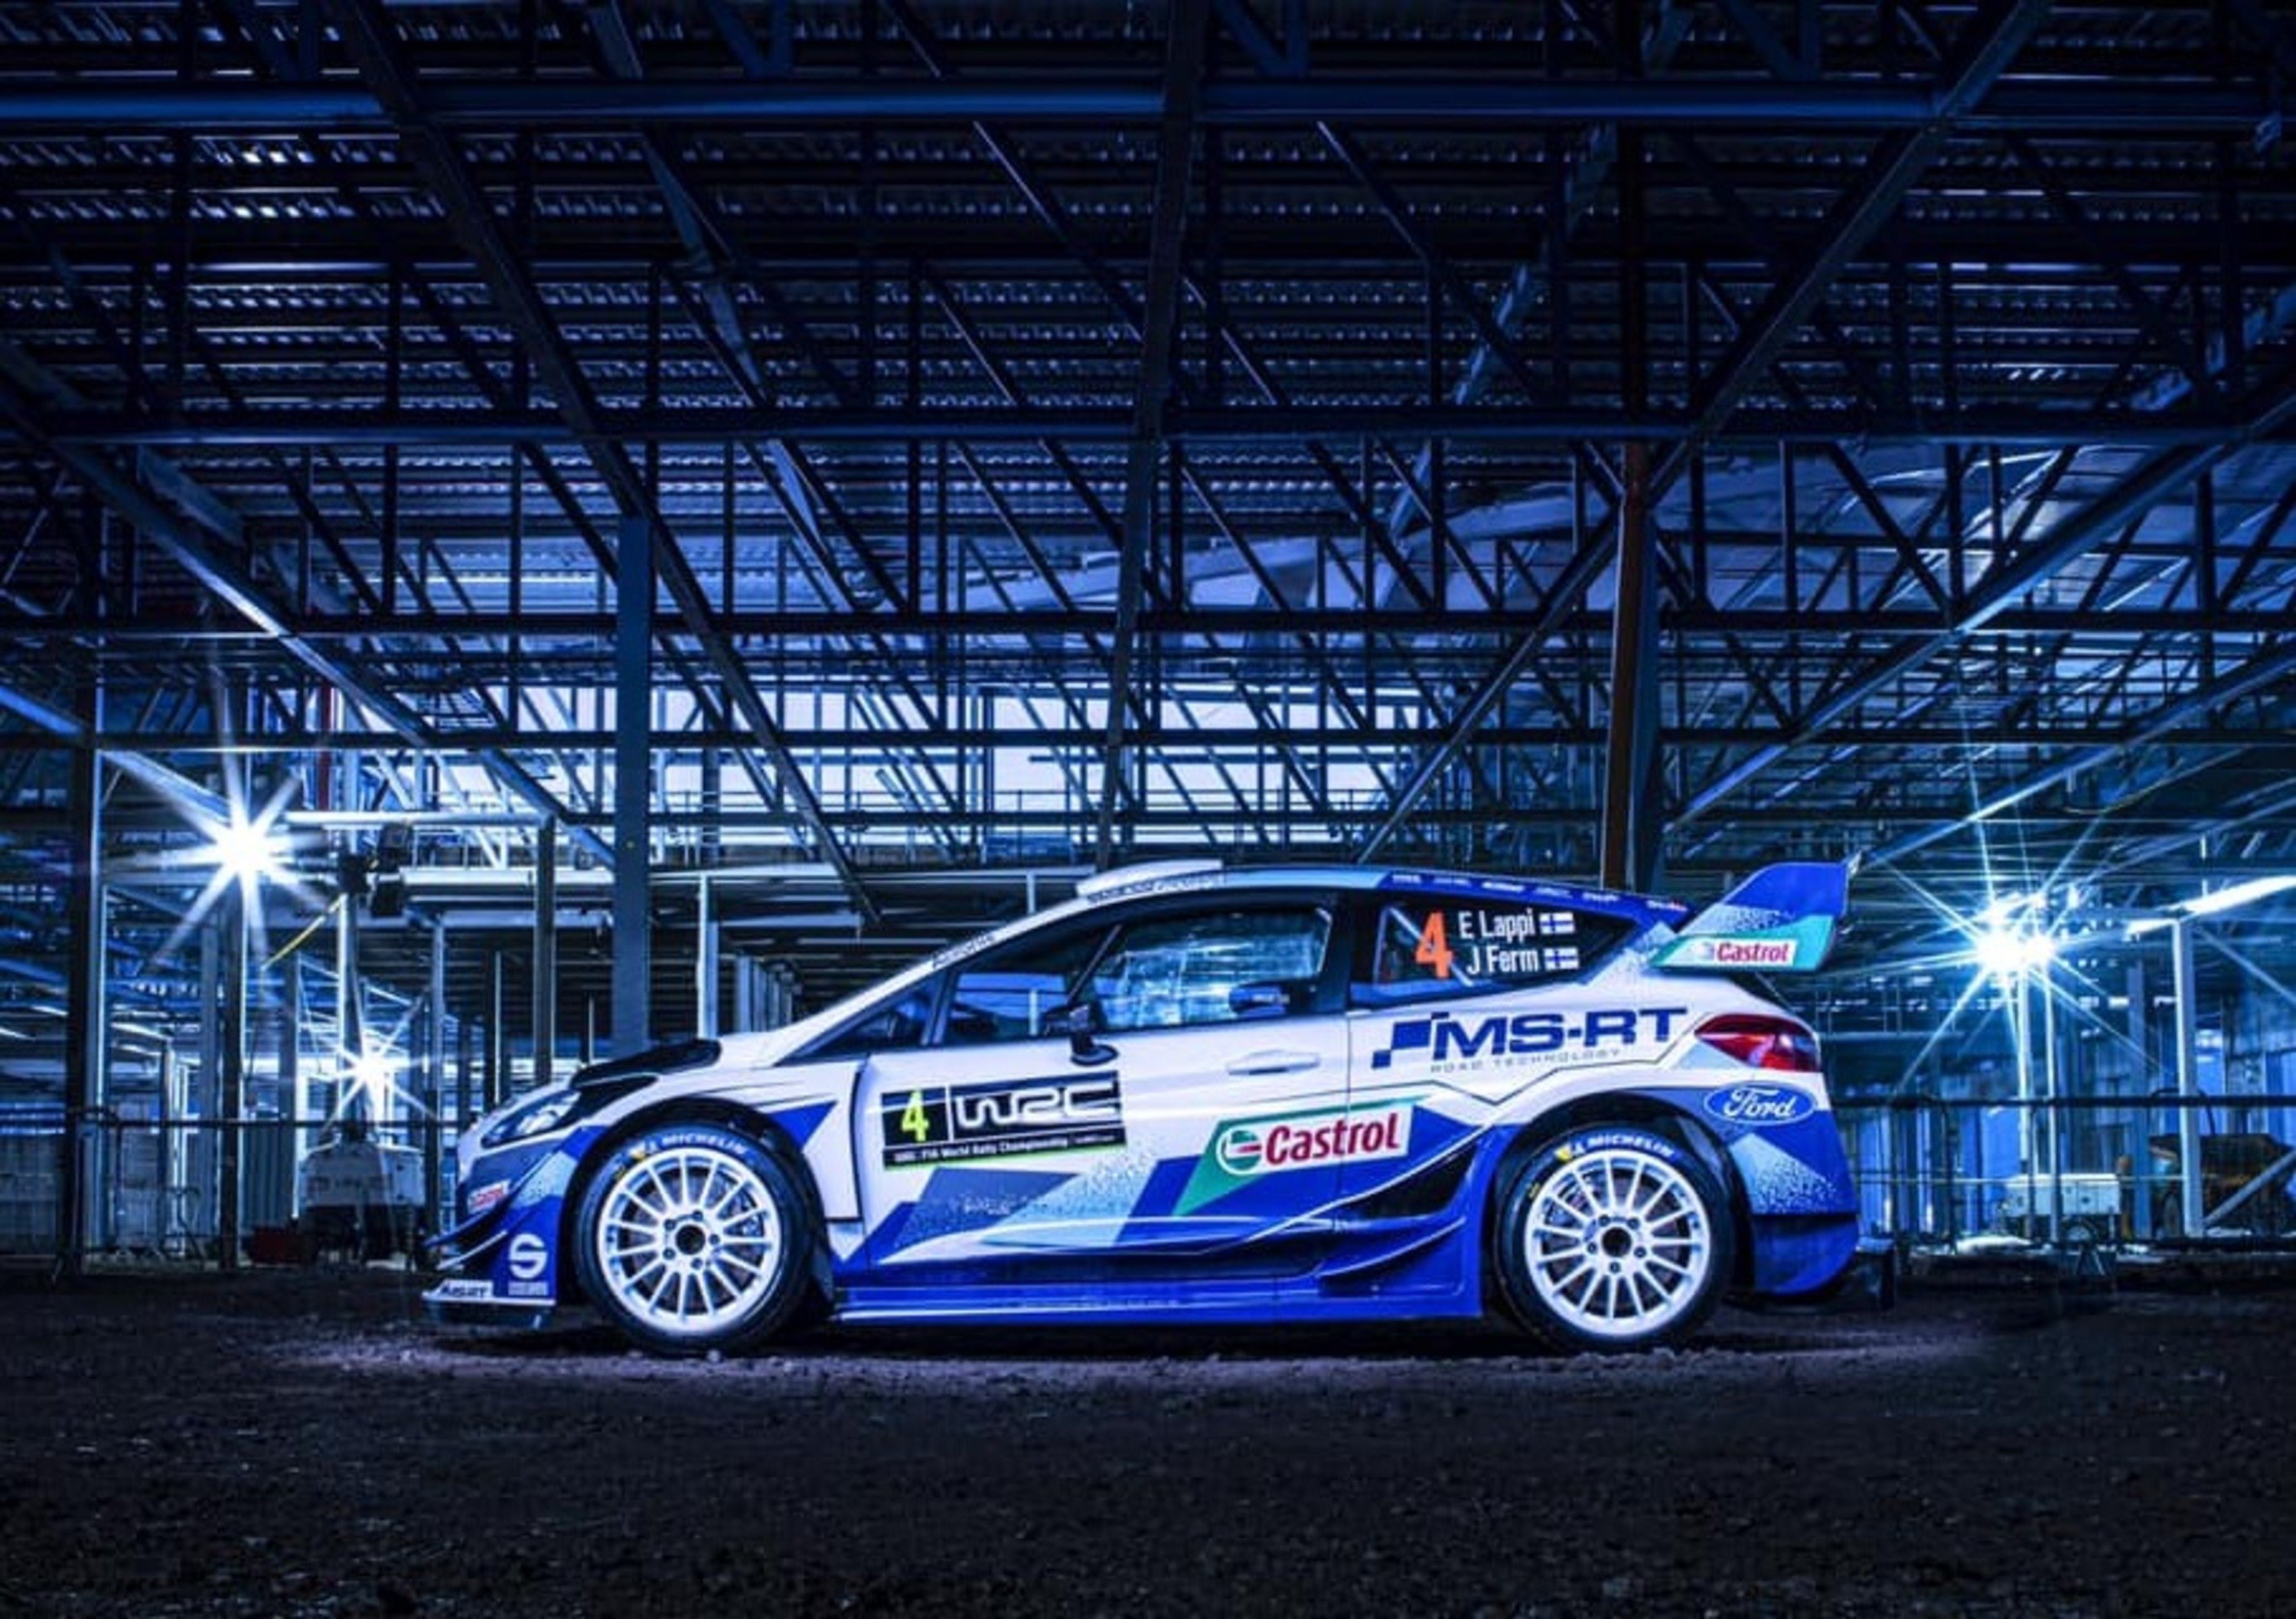 Ecco la nuova livrea della Fiesta WRC di M-Sport